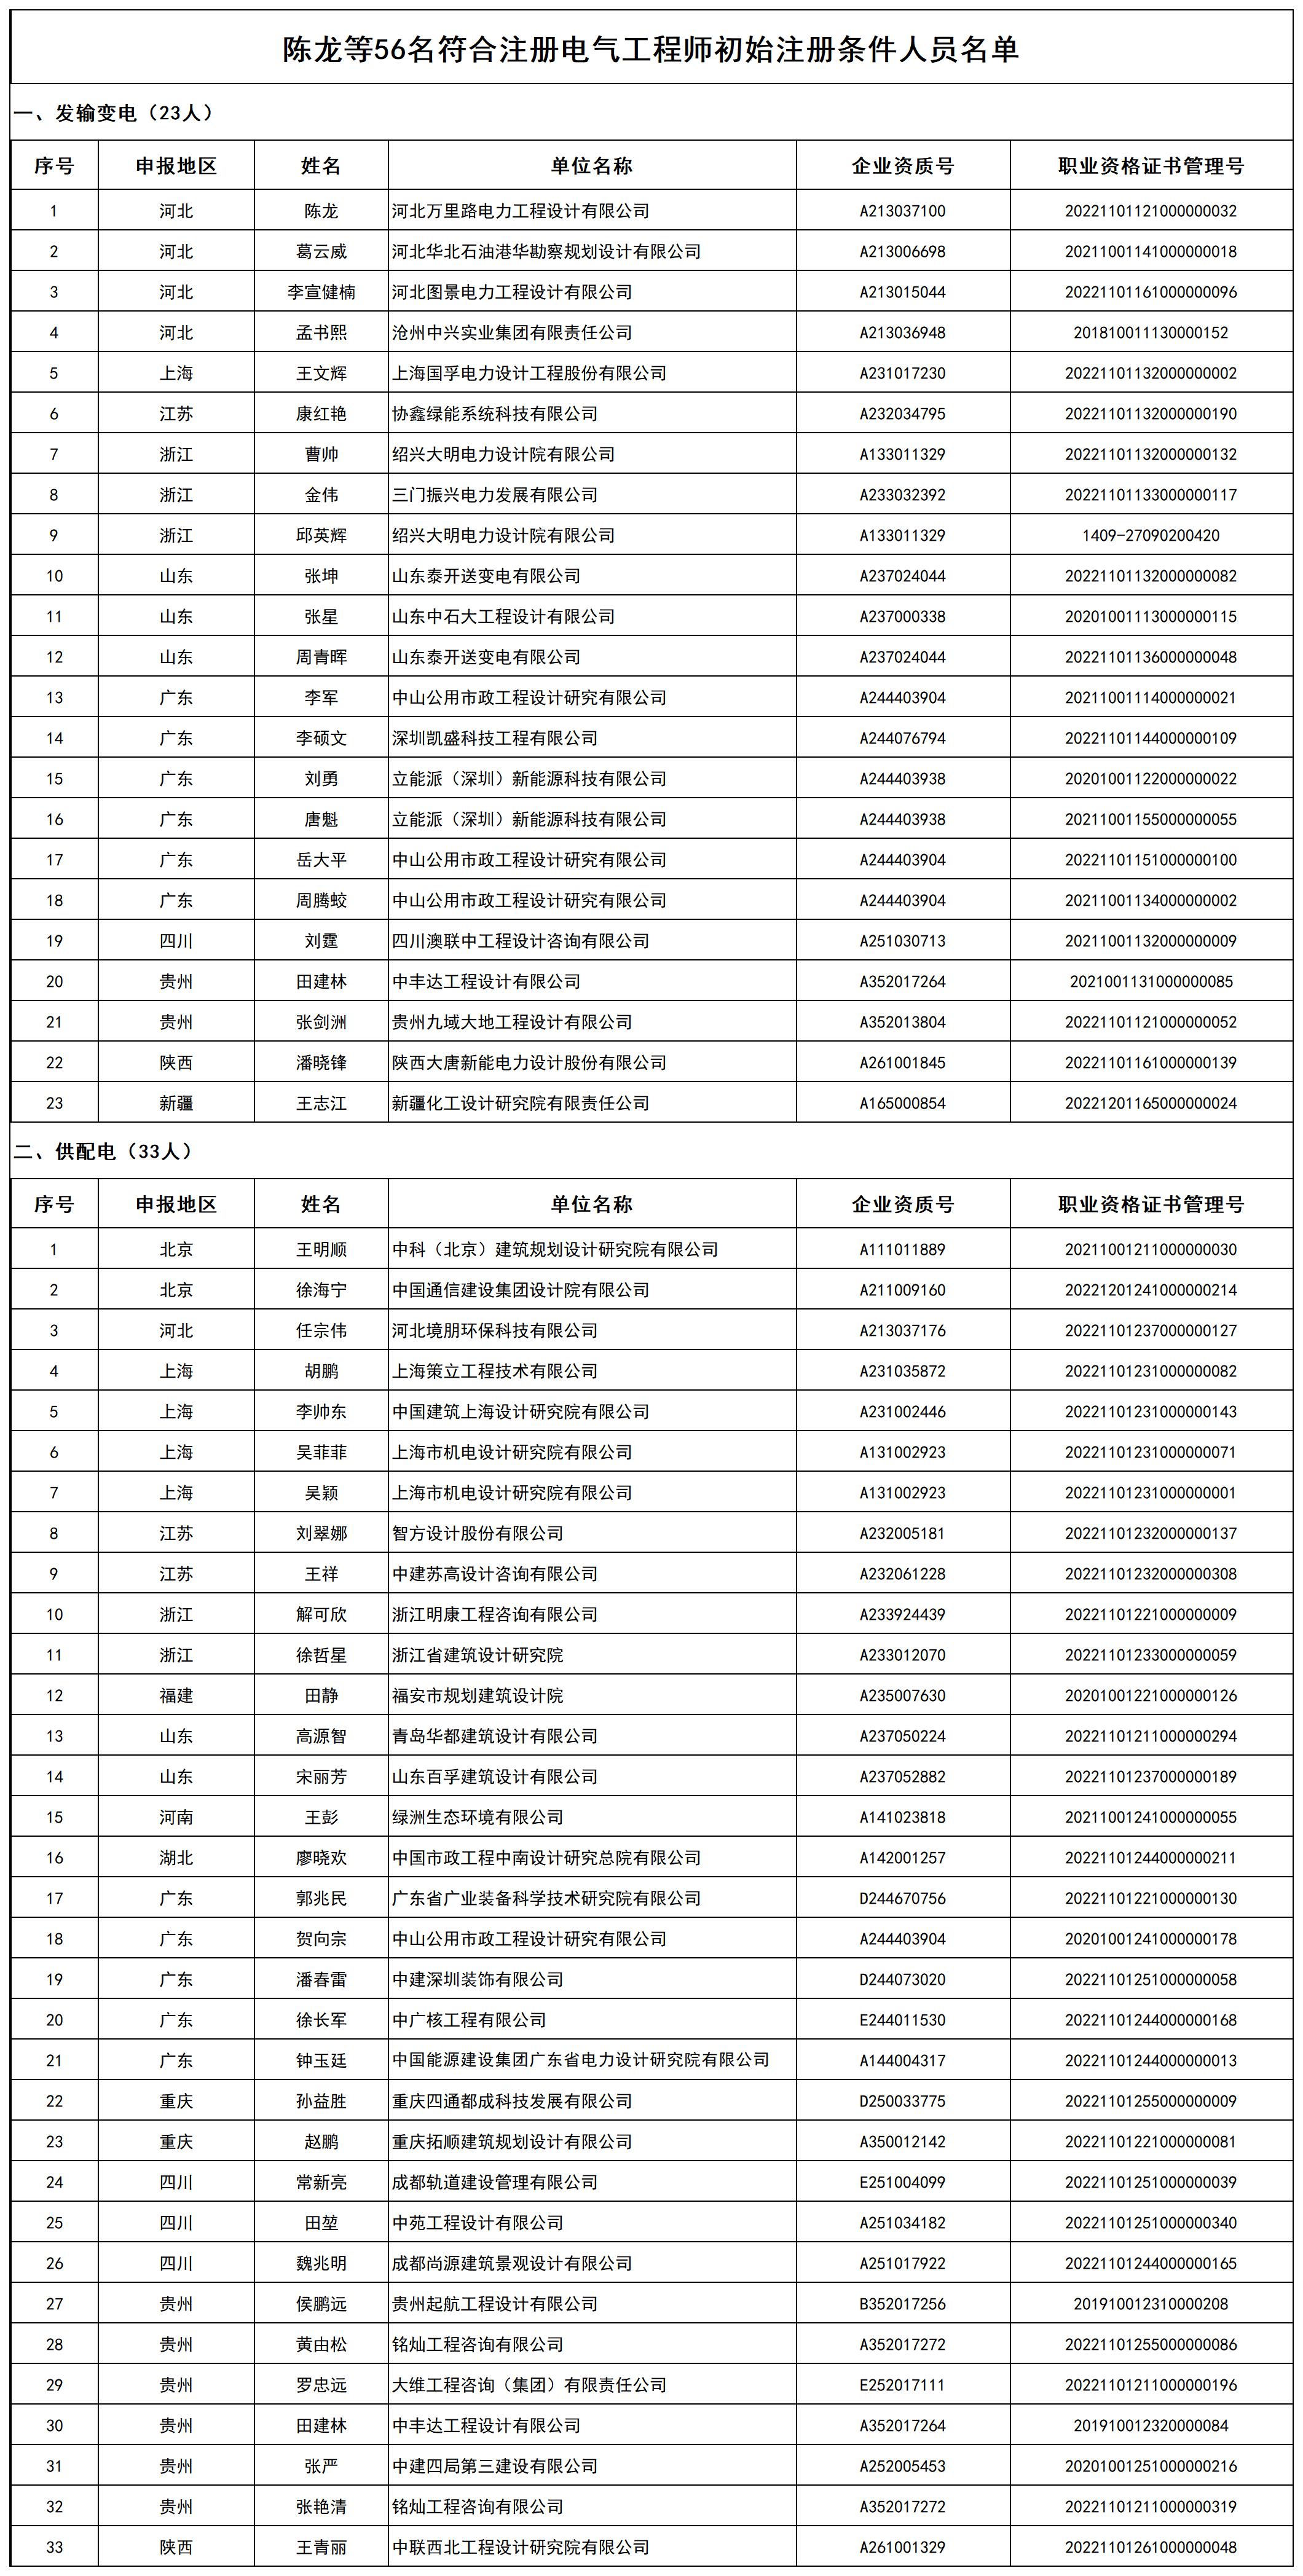 陈龙等56名符合注册电气工程师初始注册条件人员名单_打印结果.jpg